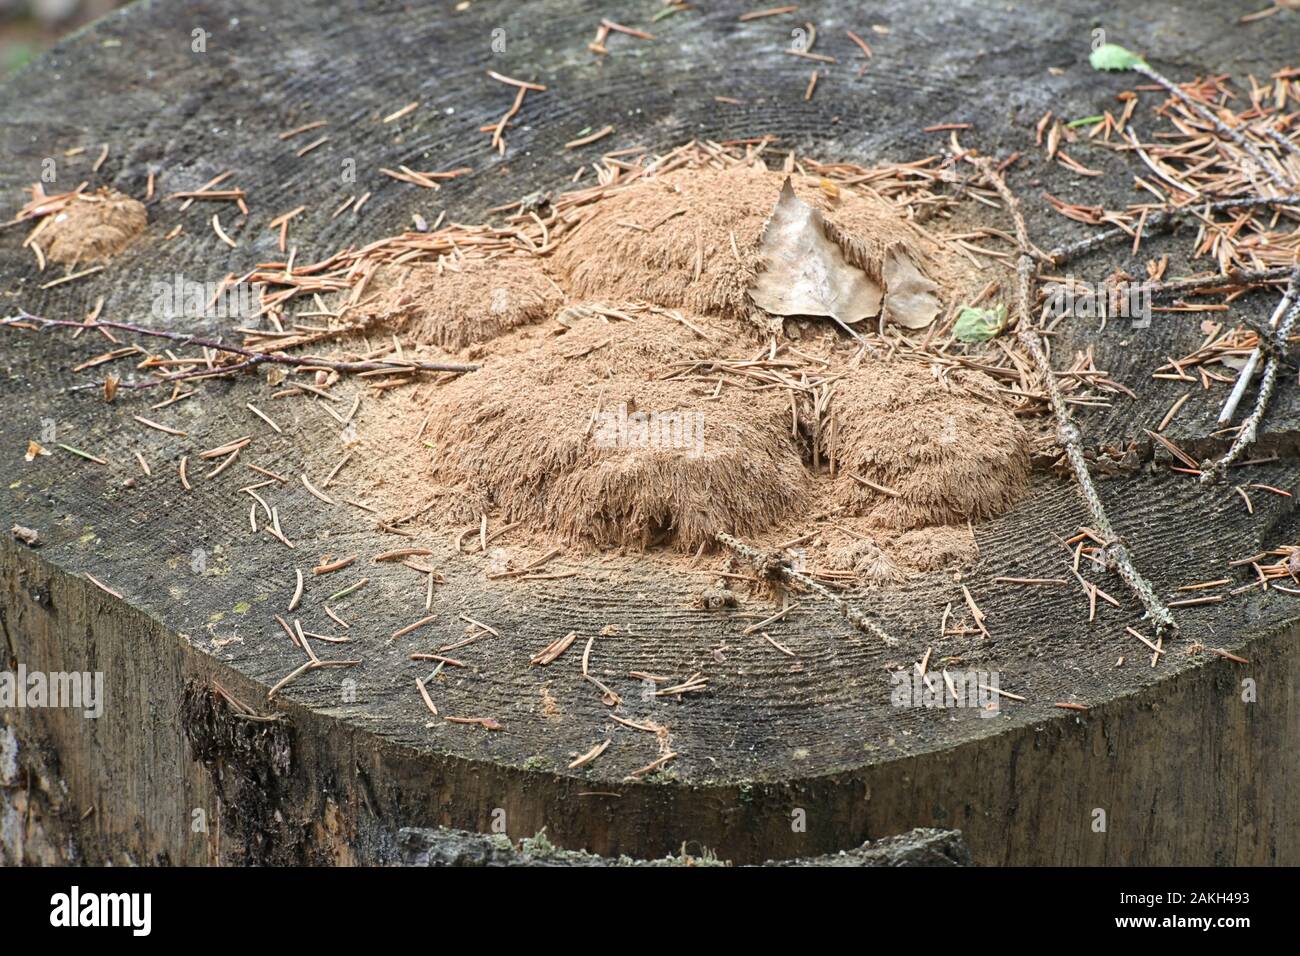 Postia ptychogaster powderpuff, connu sous le nom de champignon, la fin de l'étape du cycle de vie montrant brown demeure des chlamydospores Banque D'Images